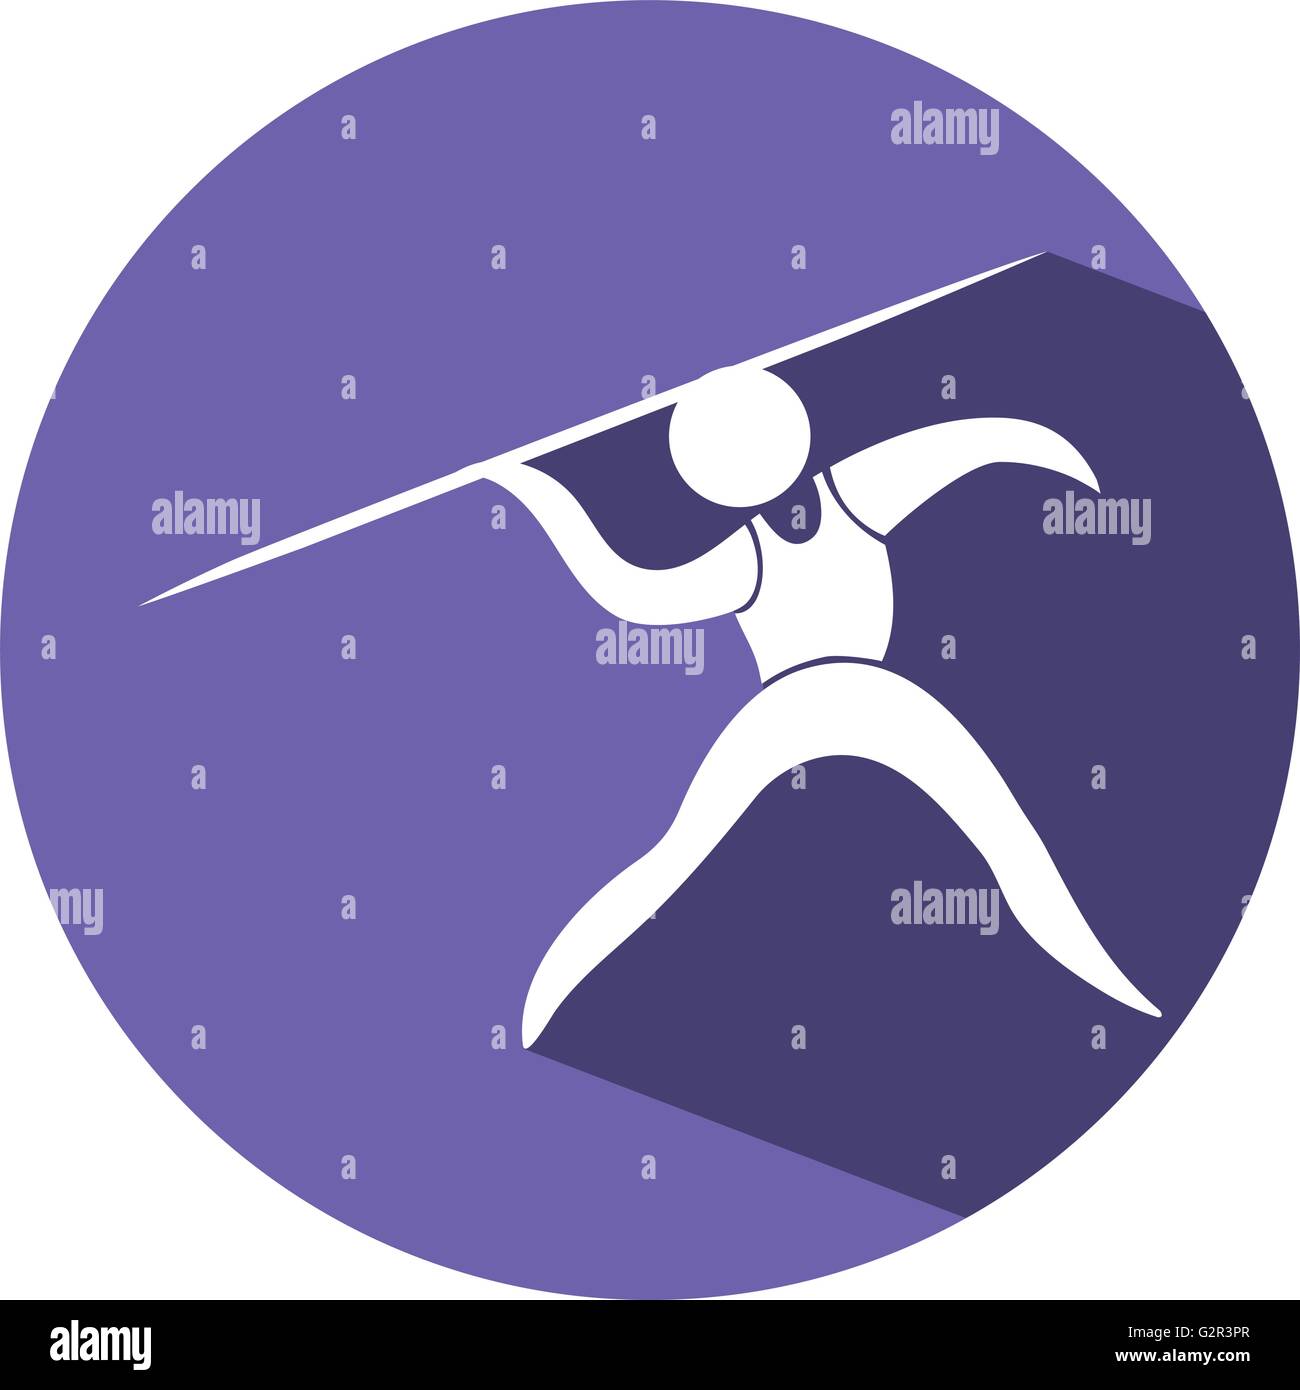 Sport-Icon-Design für Speer auf lila Abzeichen illustration Stock Vektor